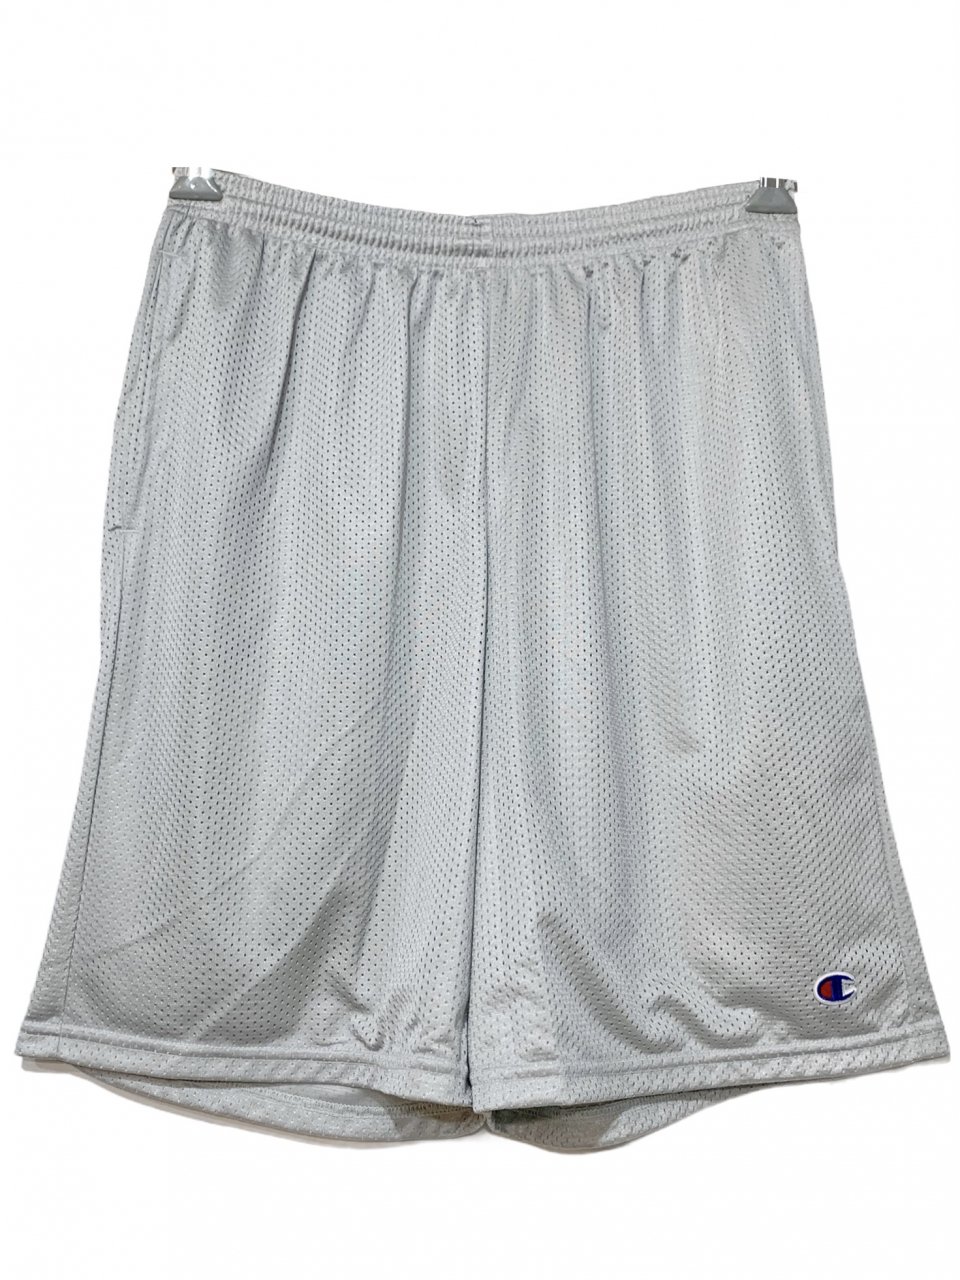 新品 US企画 Champion 3.7oz Polyester Mesh Shorts With Pocket (GREY